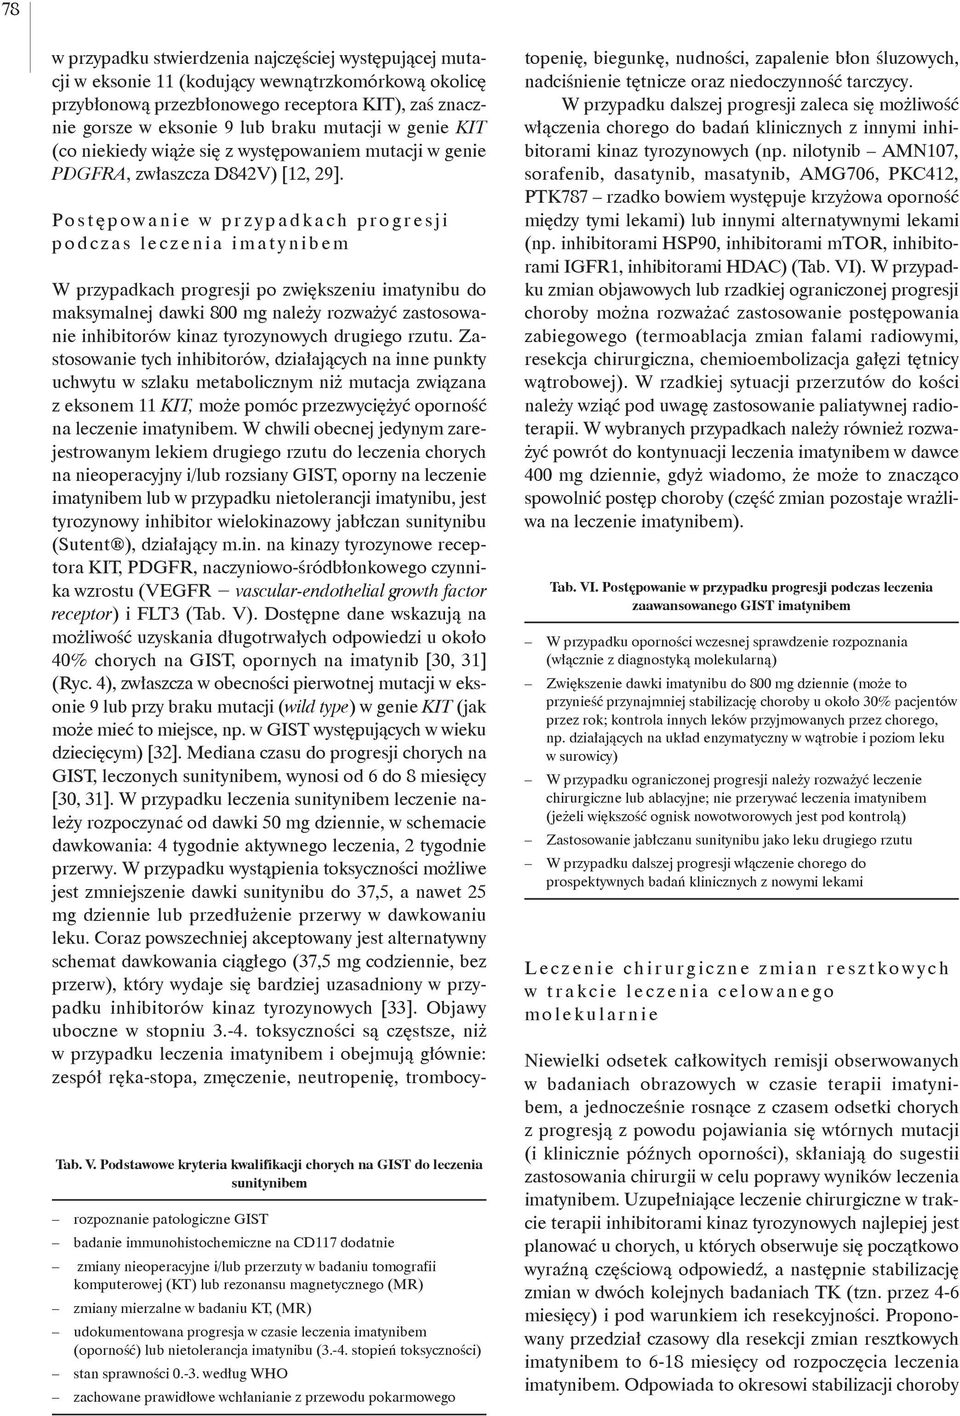 Podstawowe kryteria kwalifikacji chorych na GIST do leczenia sunitynibem rozpoznanie patologiczne GIST badanie immunohistochemiczne na CD117 dodatnie zmiany nieoperacyjne i/lub przerzuty w badaniu